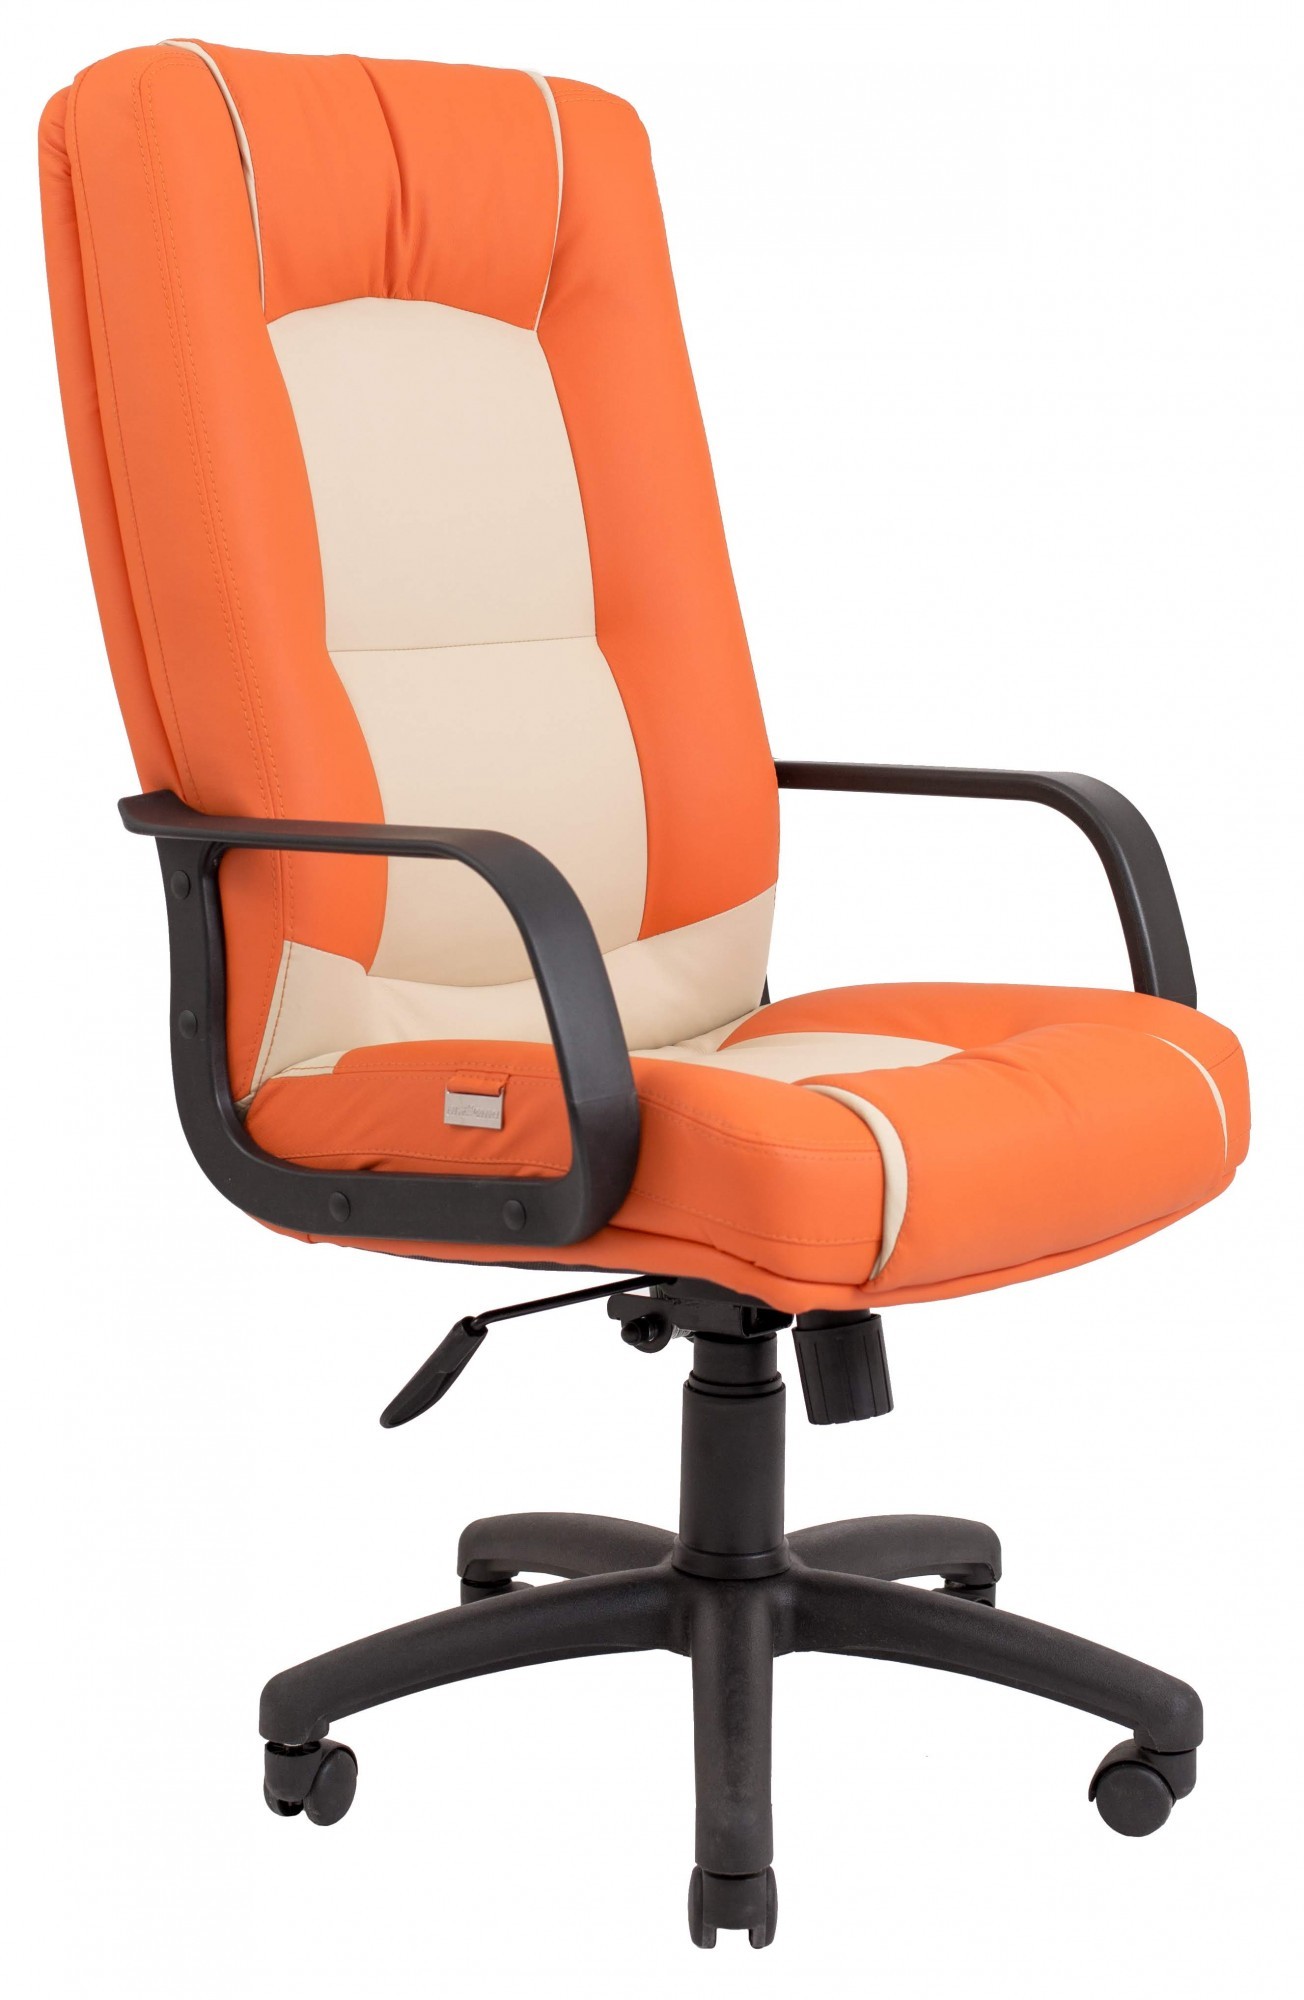 Офисное Кресло Руководителя Richman Альберто Флай 2218-2207 Пластик М1 Tilt Бежево-оранжевое